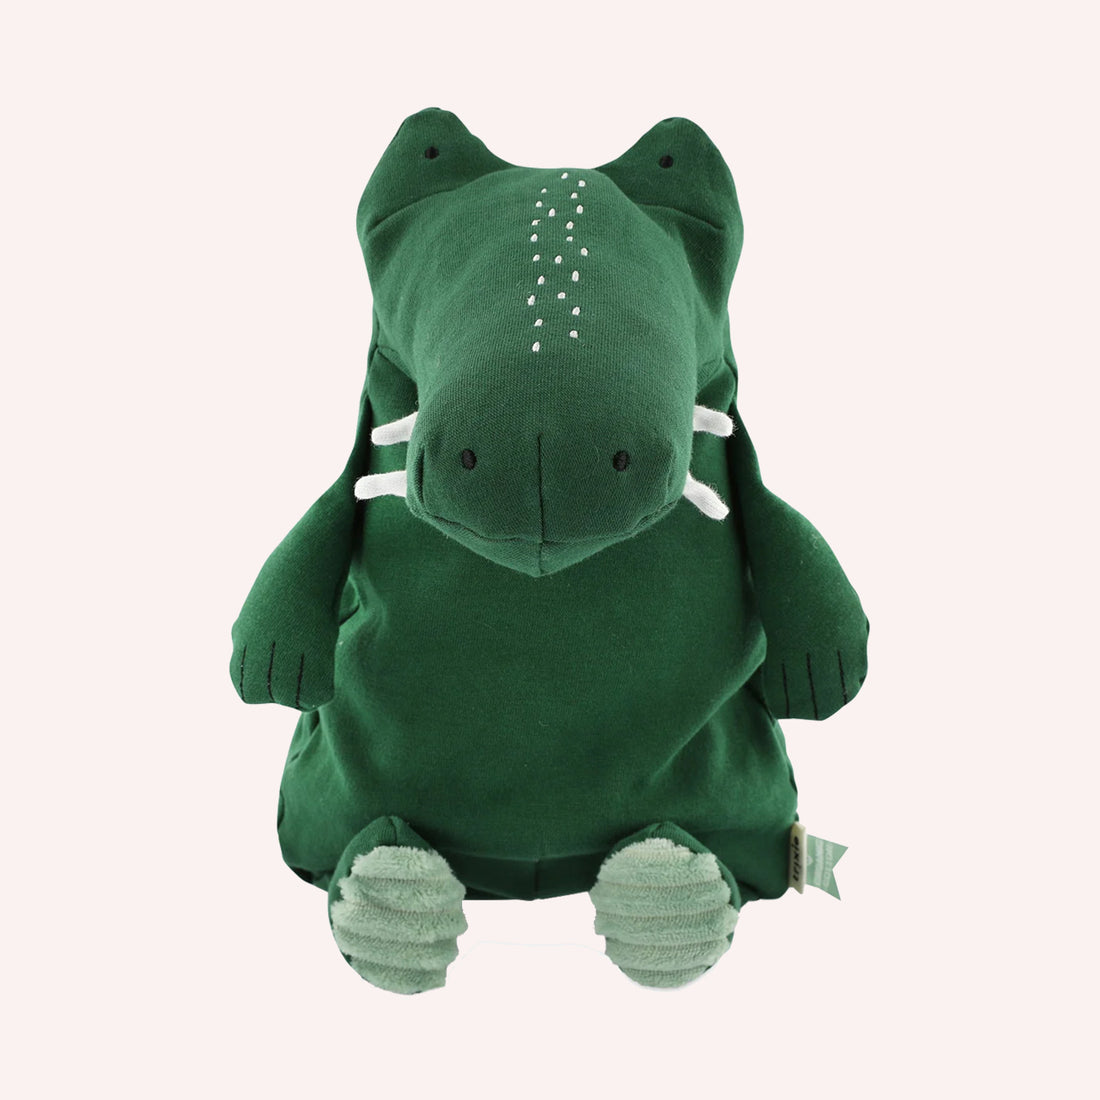 Large Plush Toy - Mr. Crocodile